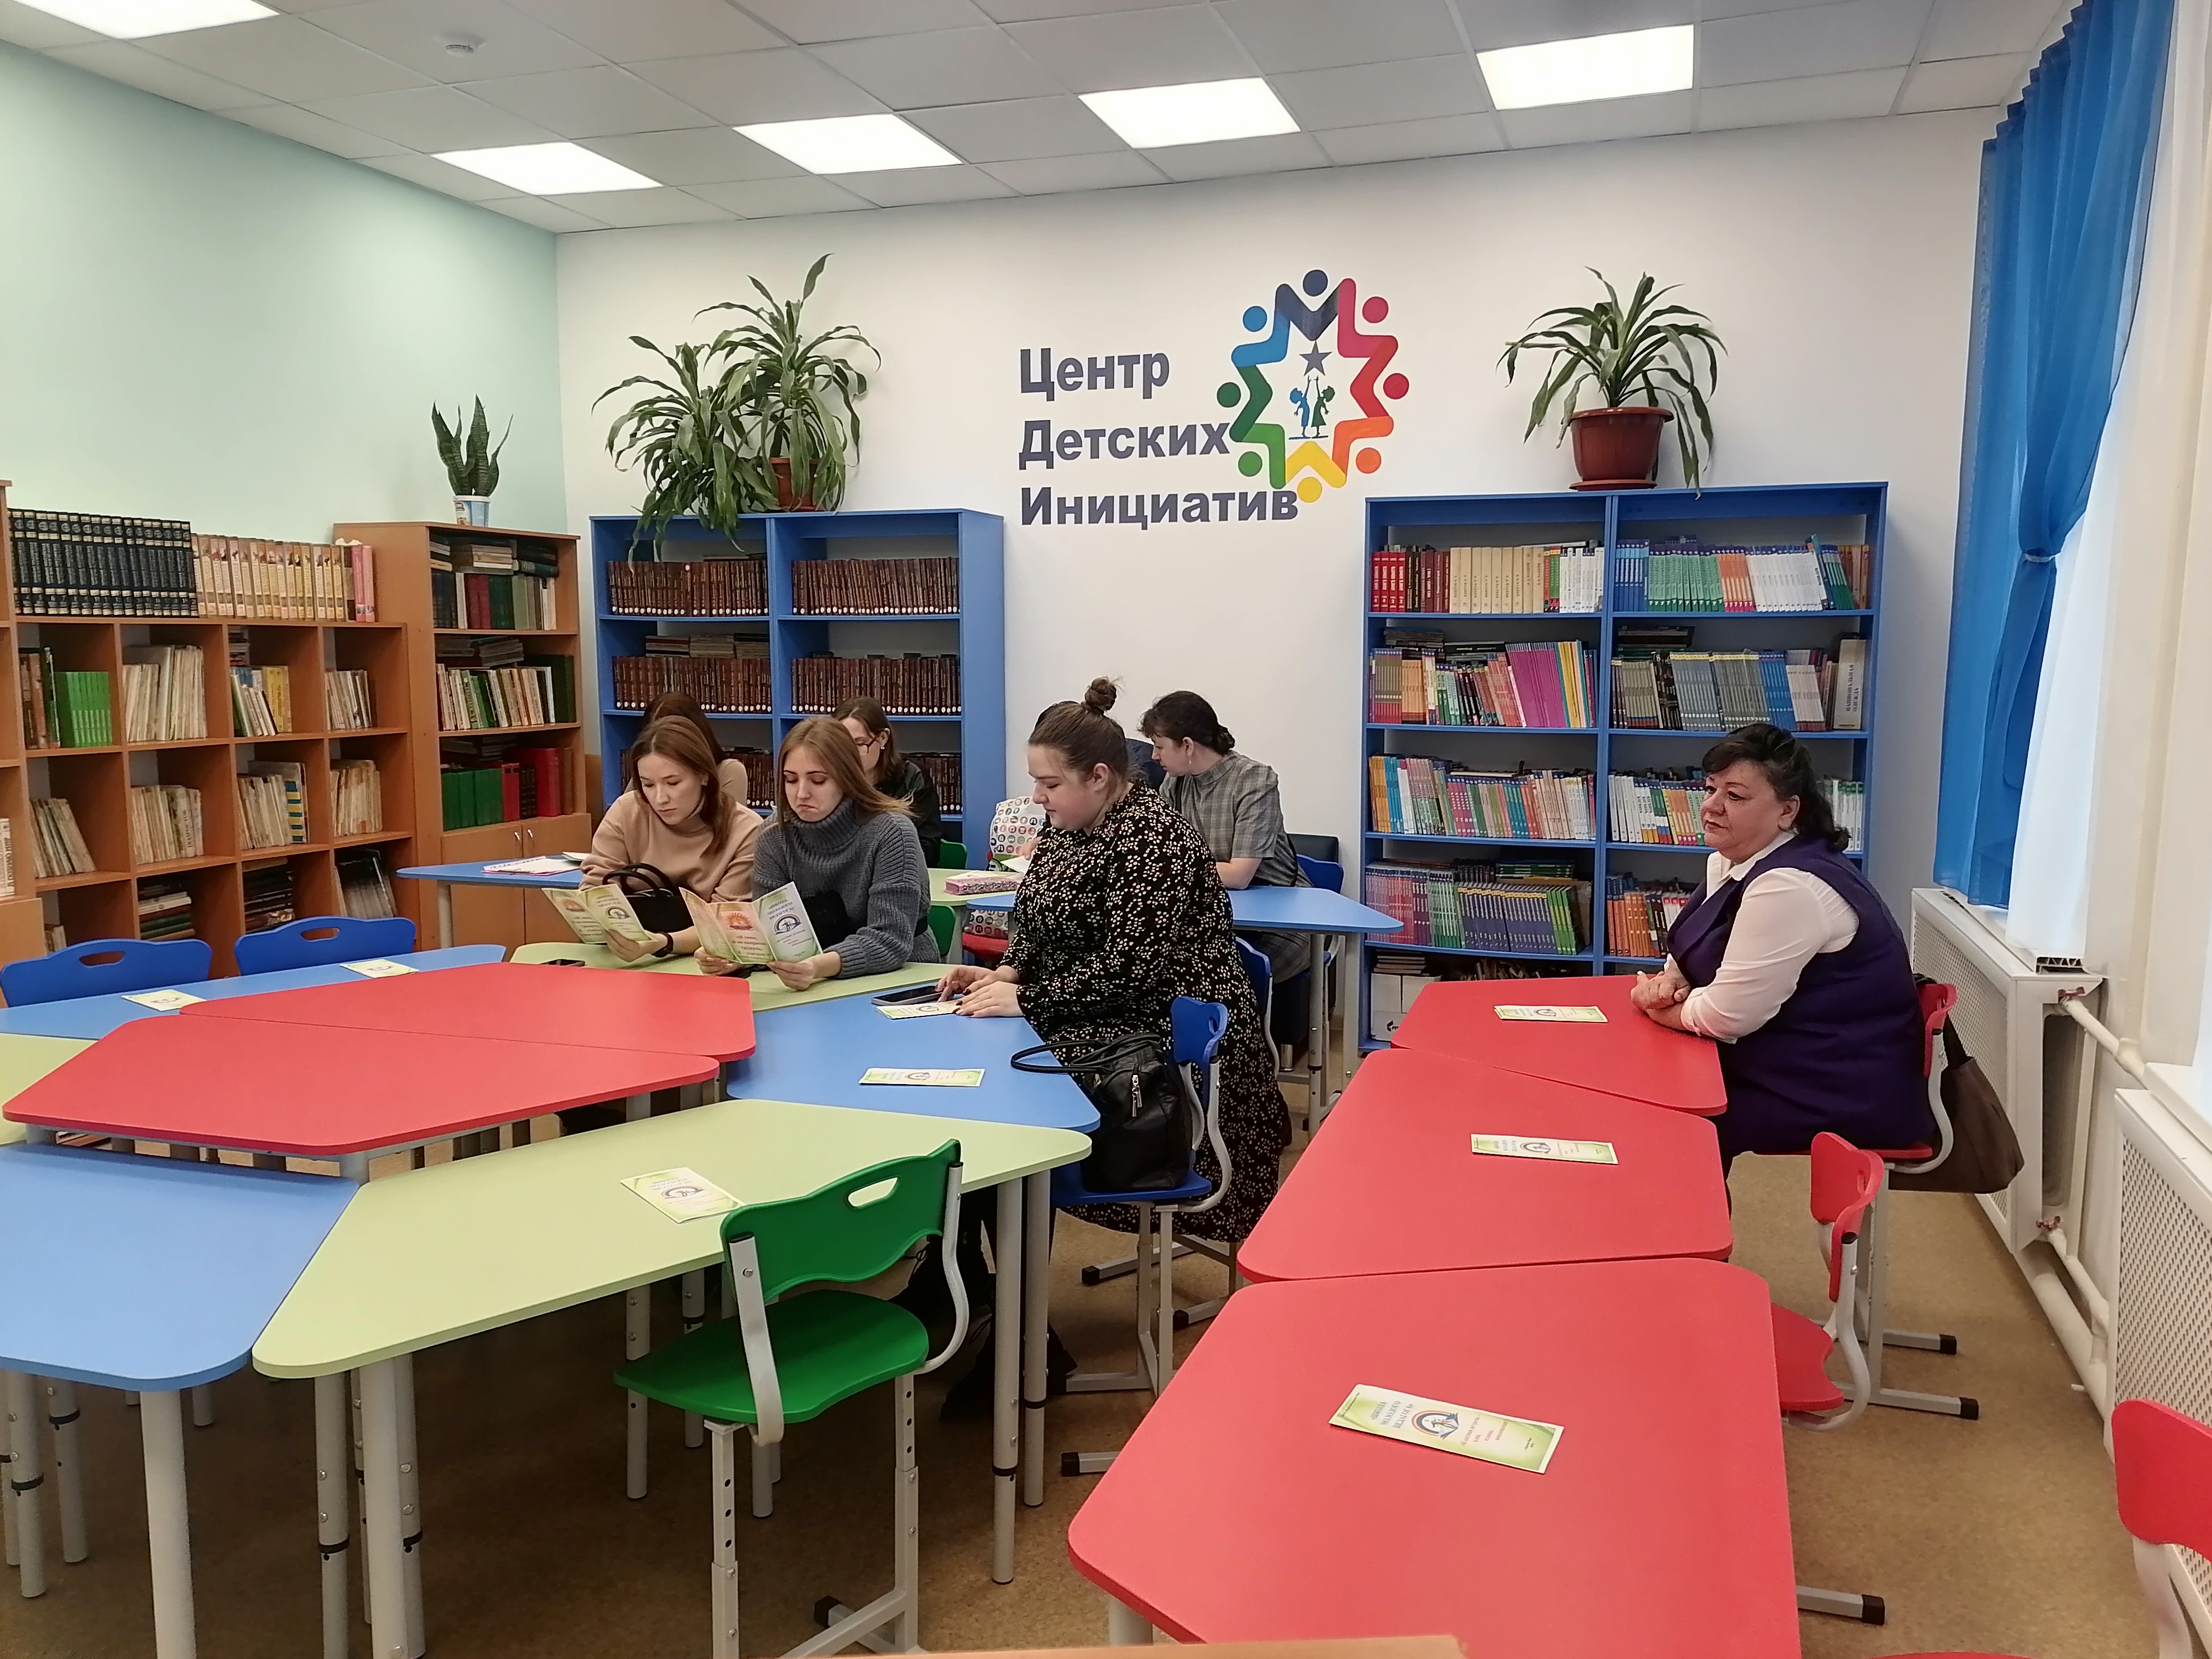 Библиотечно-информационный центр/Комната детских инициатив